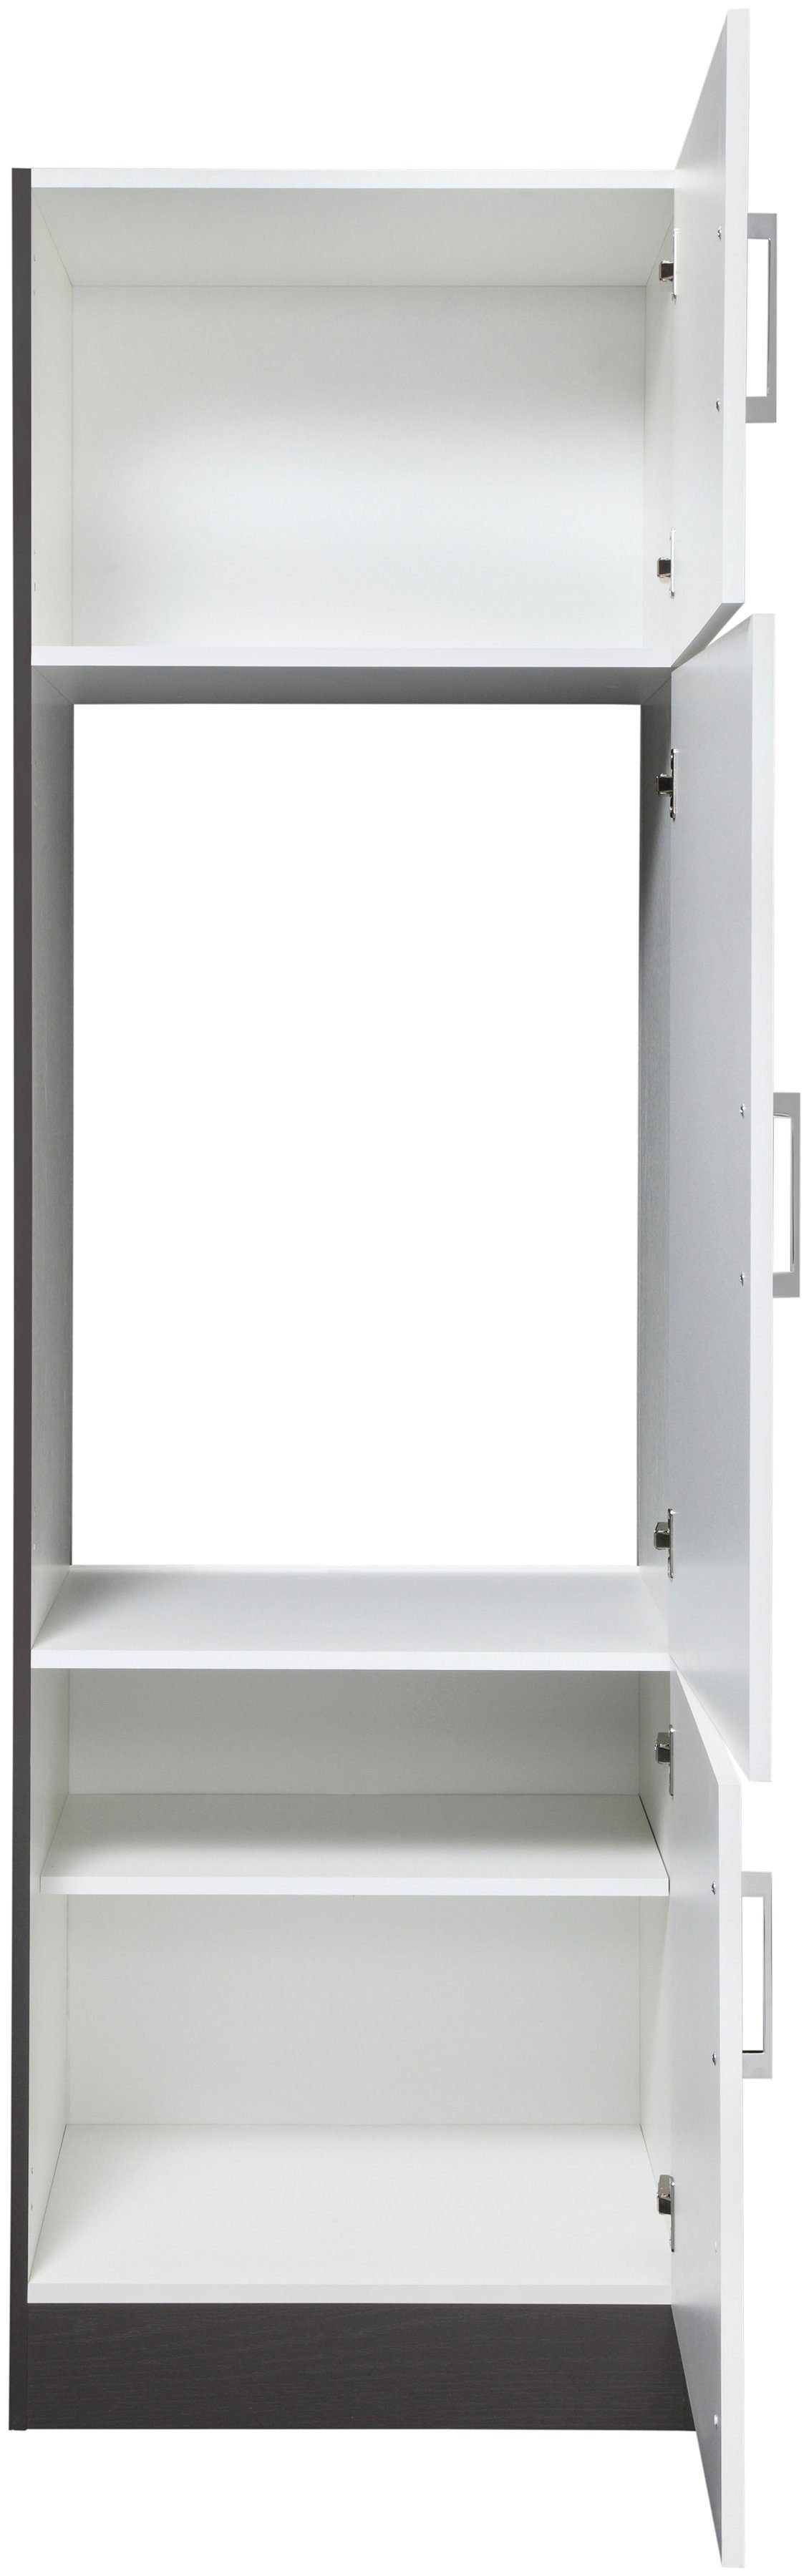 HELD MÖBEL Kühlumbauschrank Paris Breite 60 cm, Passend für alle Standard  Einbau-Kühlschränke 88 cm